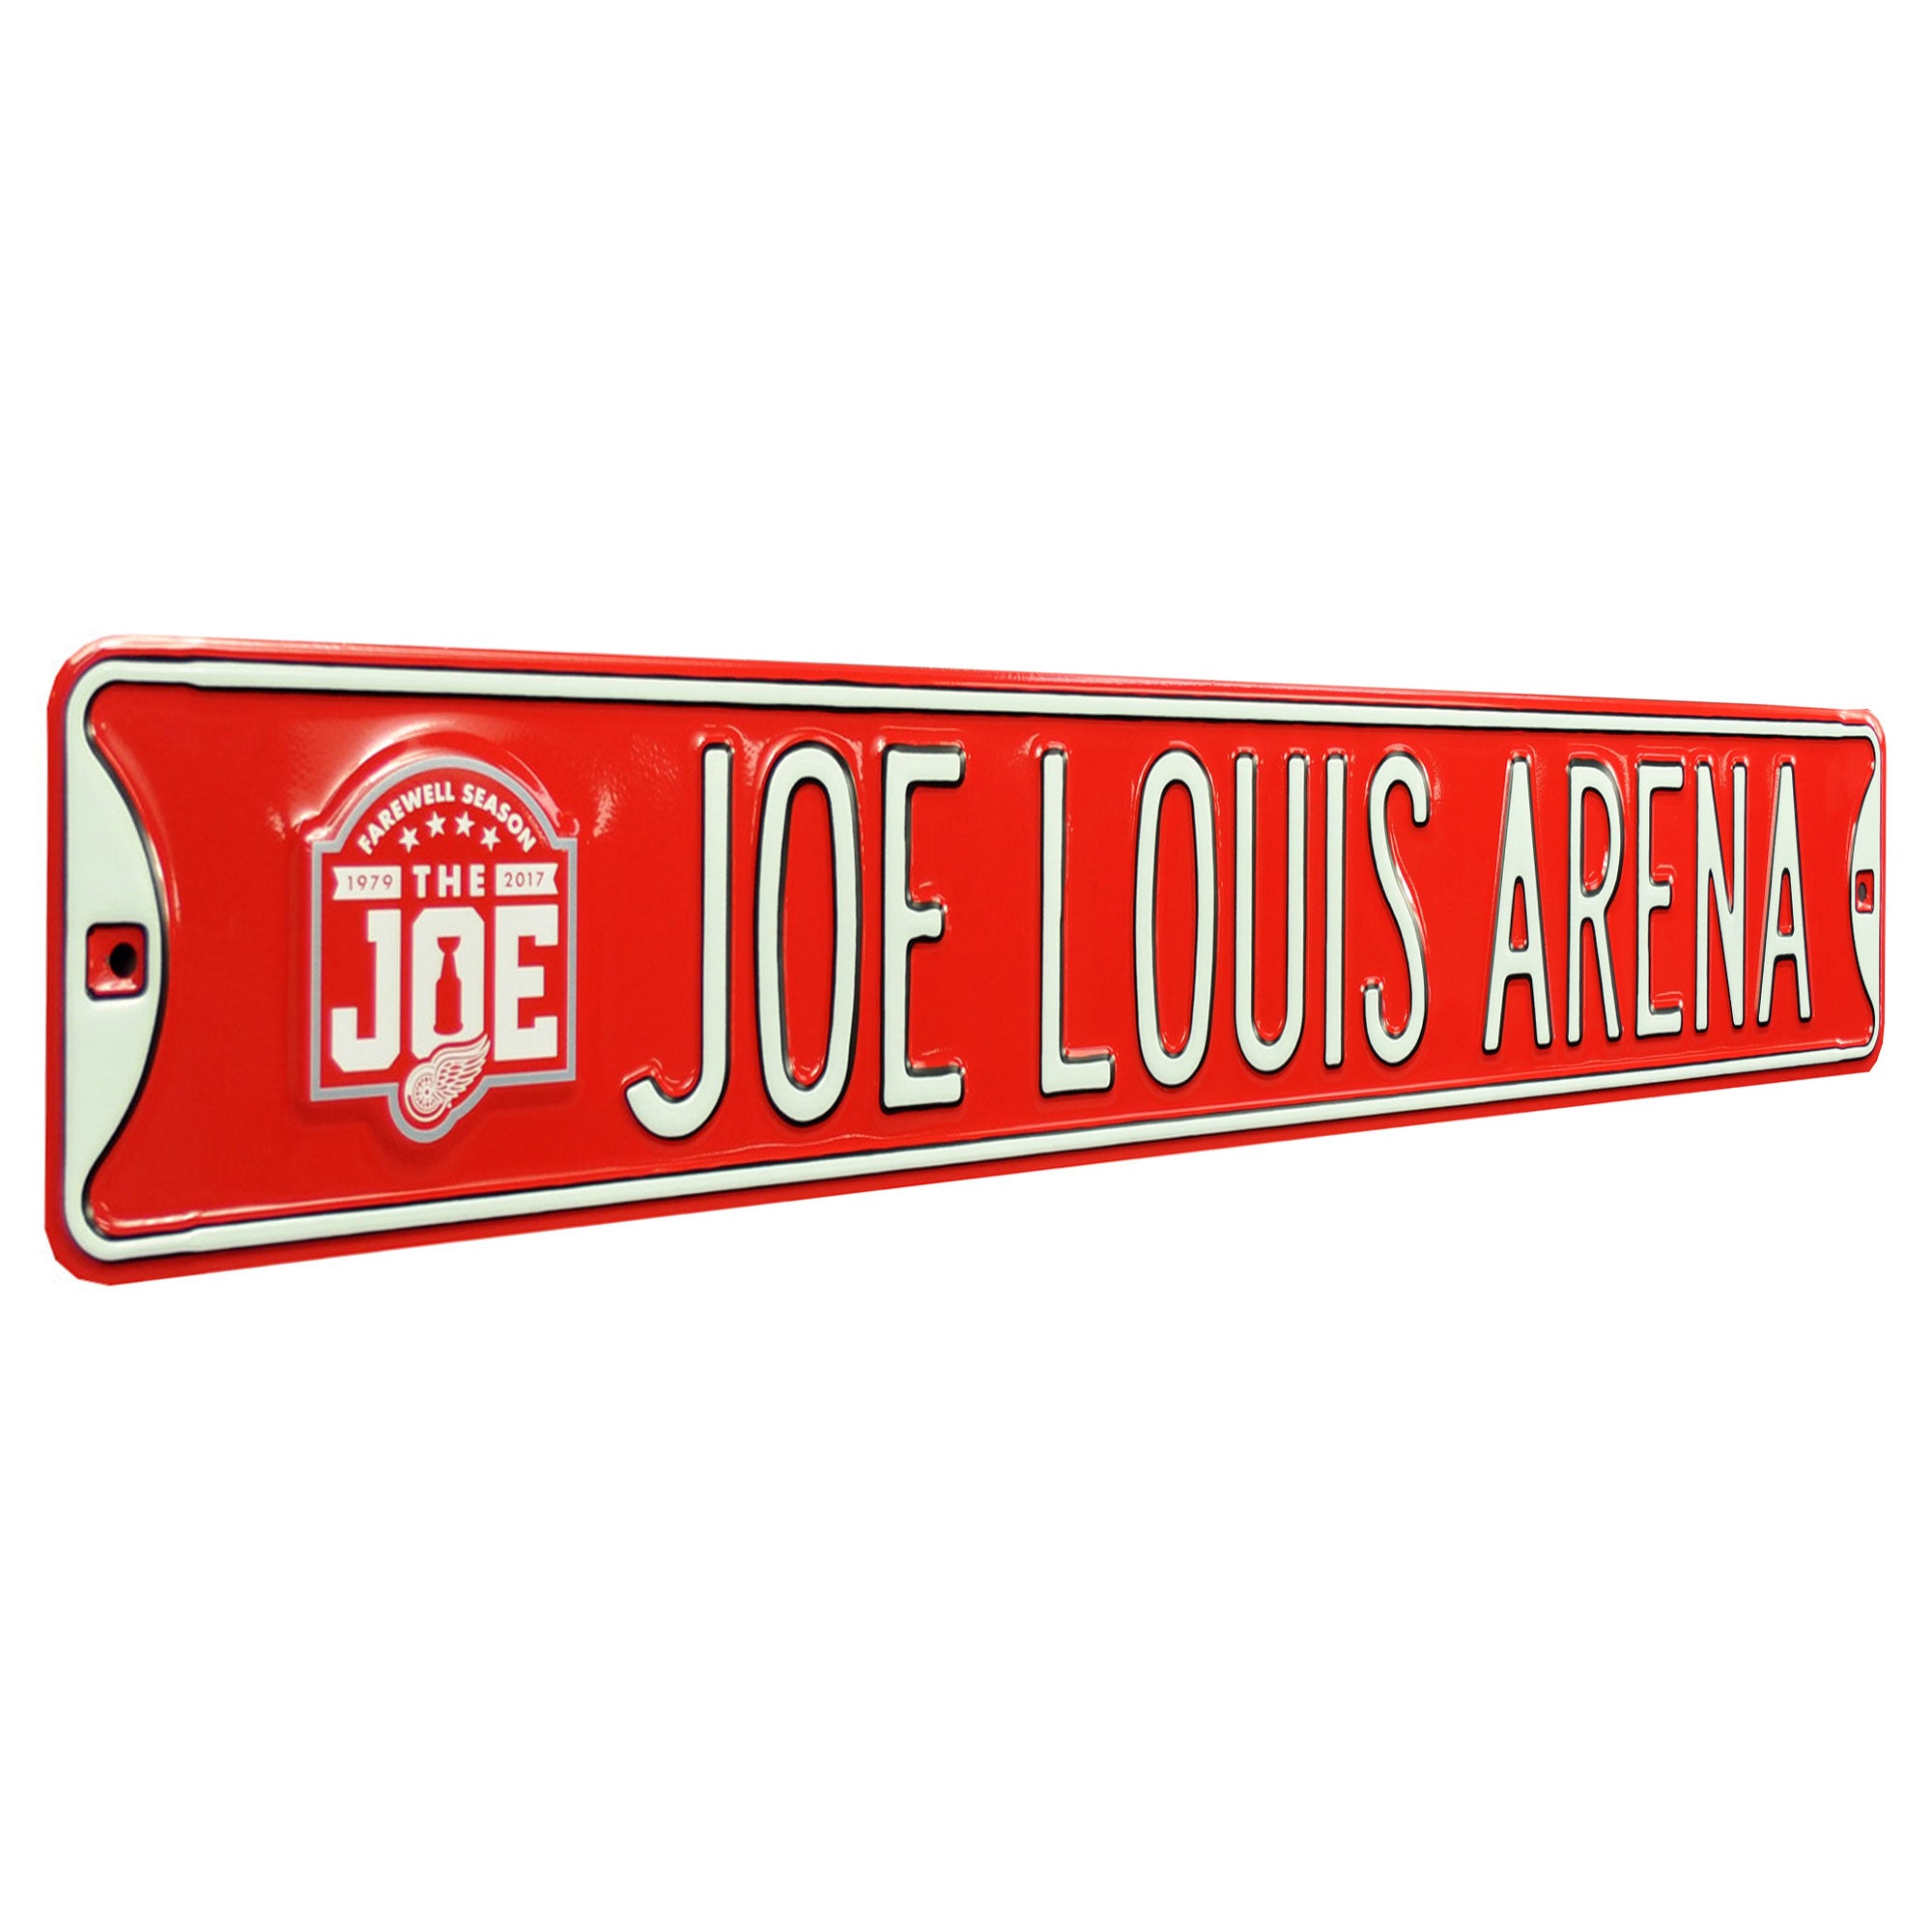 A Farewell in Photos - Joe Louis Arena